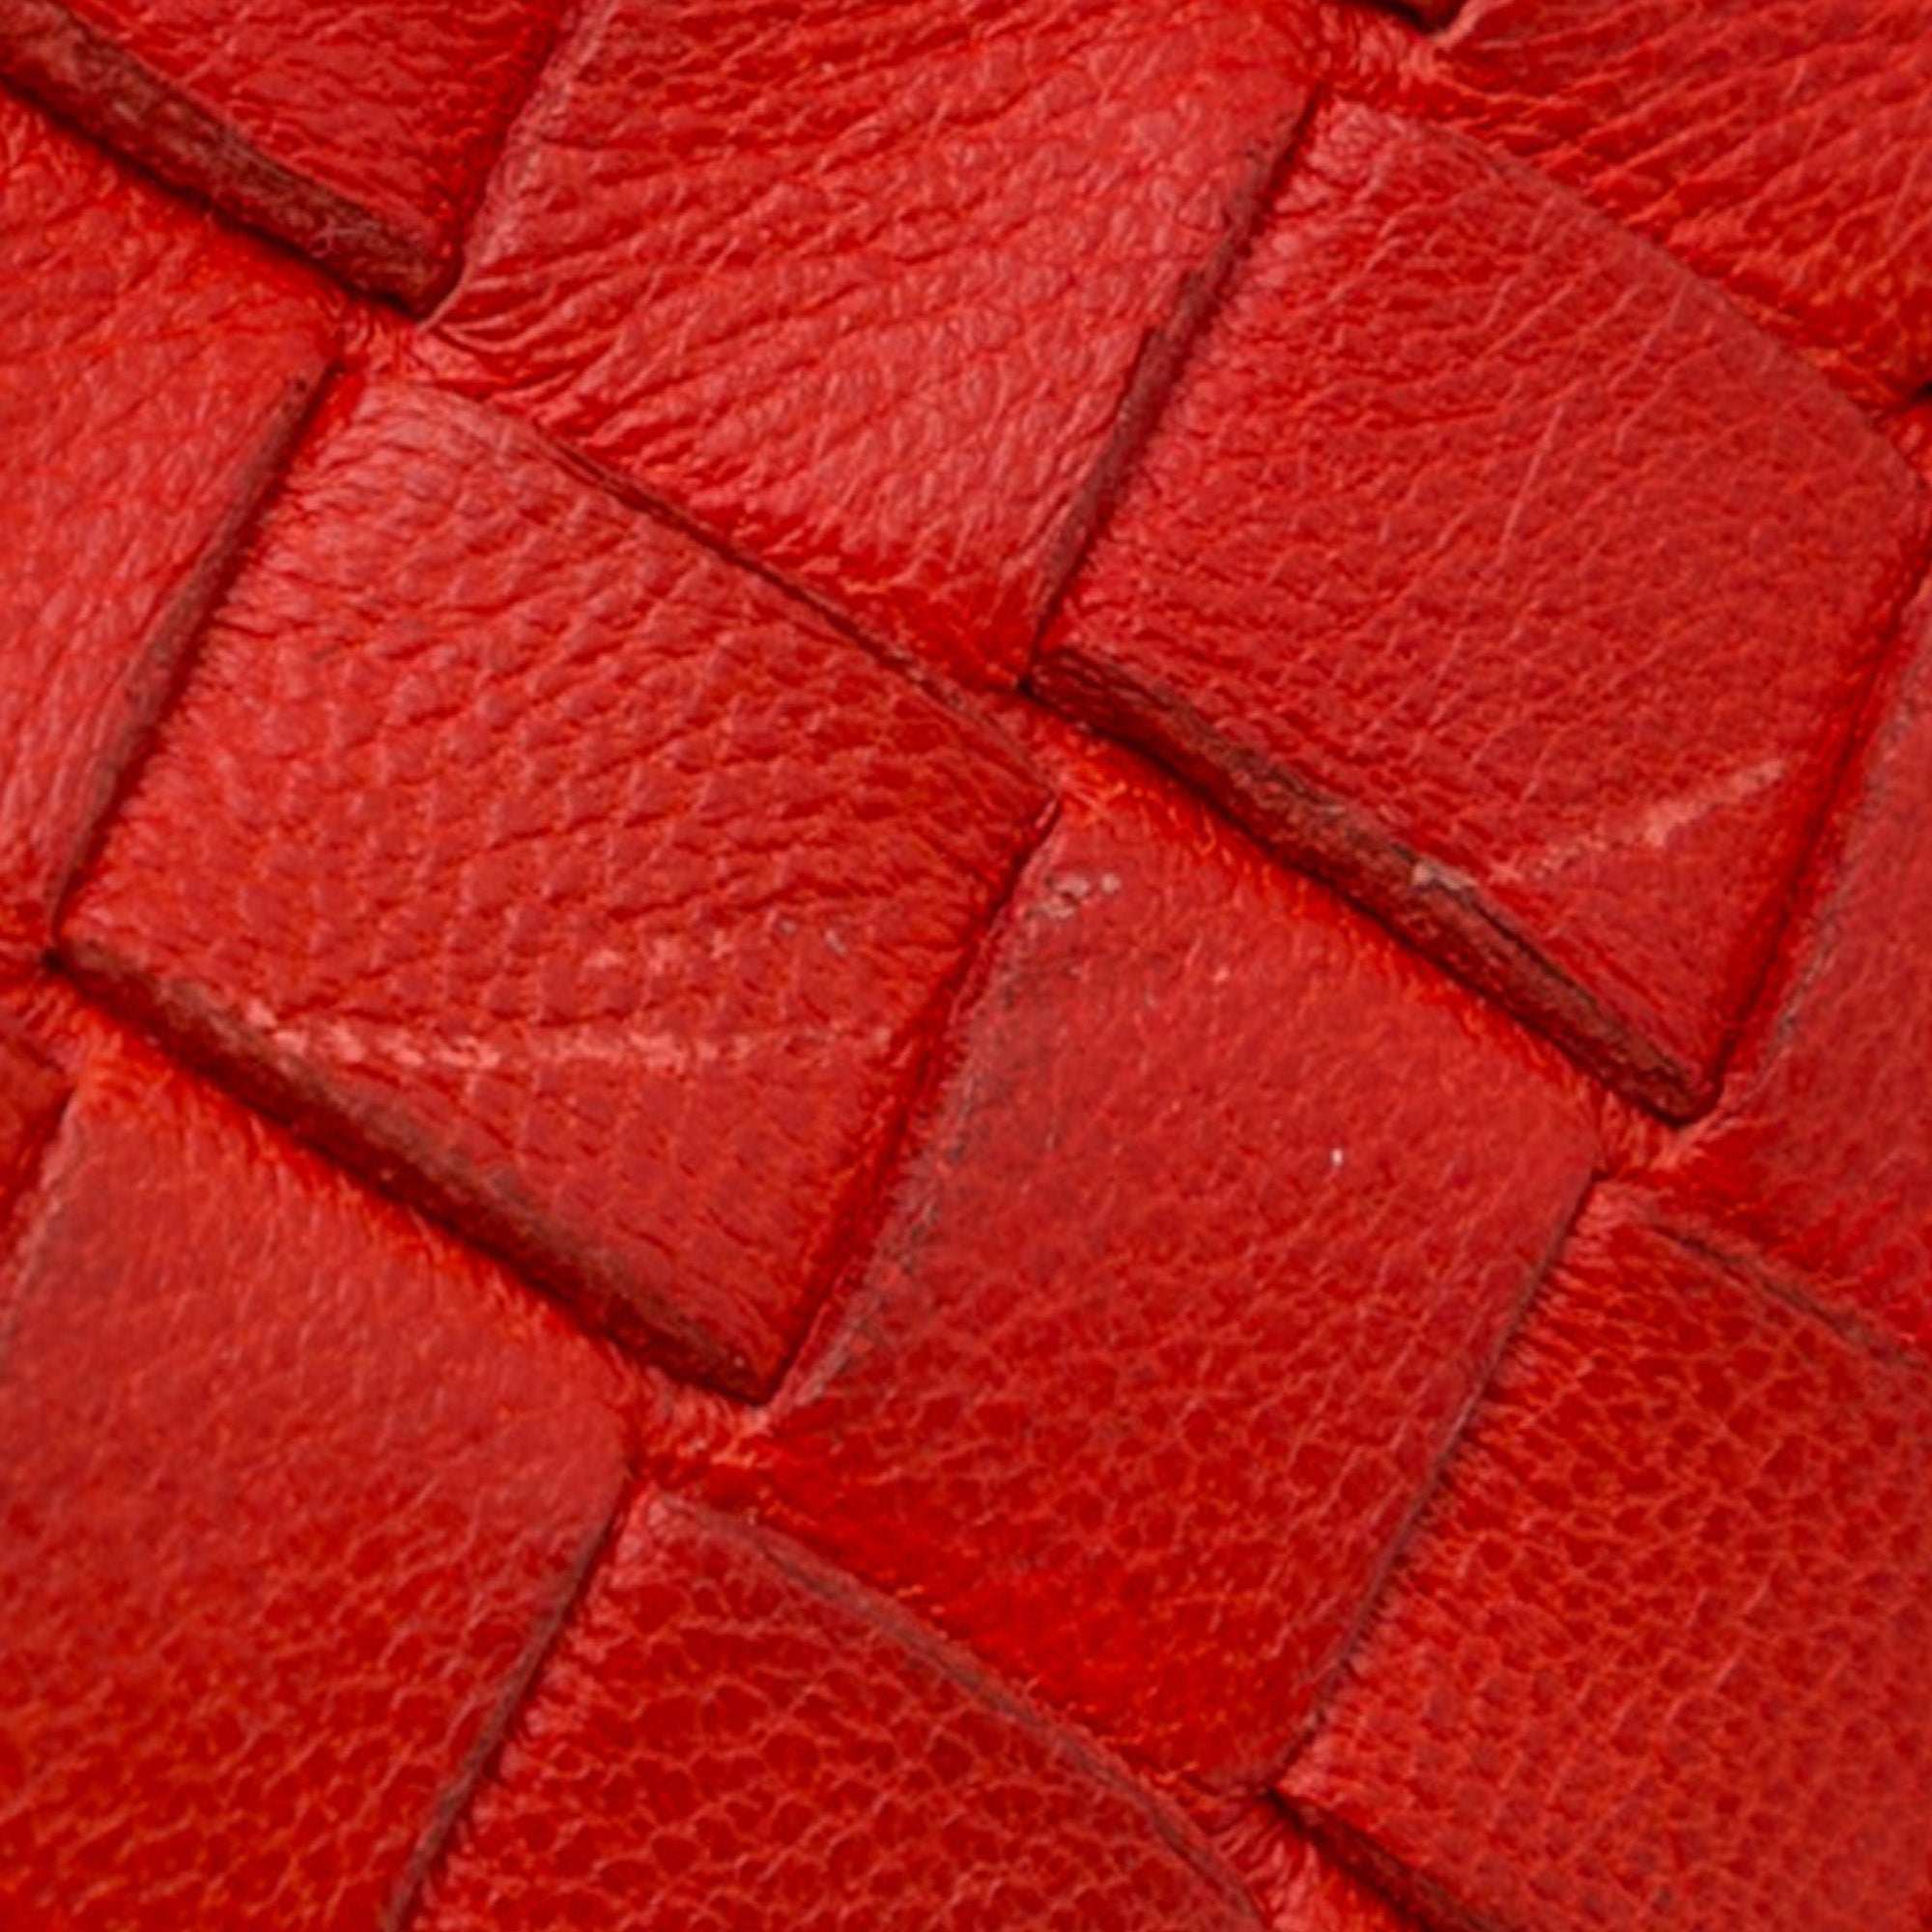 Red Bottega Veneta Intrecciato Nodini Crossbody Bag – Designer Revival